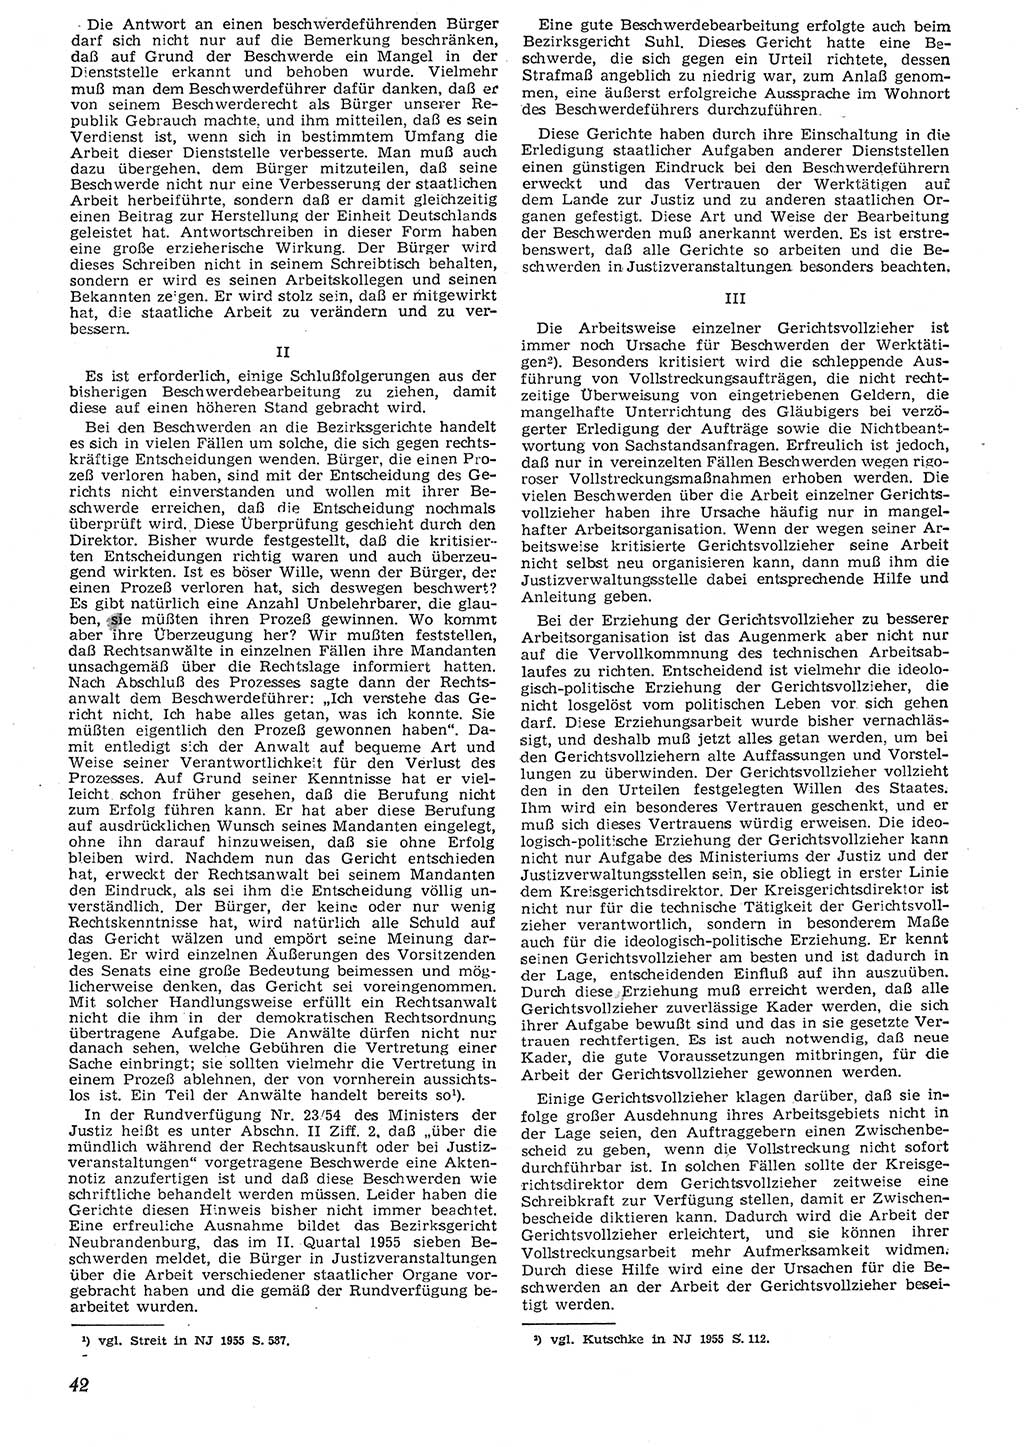 Neue Justiz (NJ), Zeitschrift für Recht und Rechtswissenschaft [Deutsche Demokratische Republik (DDR)], 10. Jahrgang 1956, Seite 42 (NJ DDR 1956, S. 42)